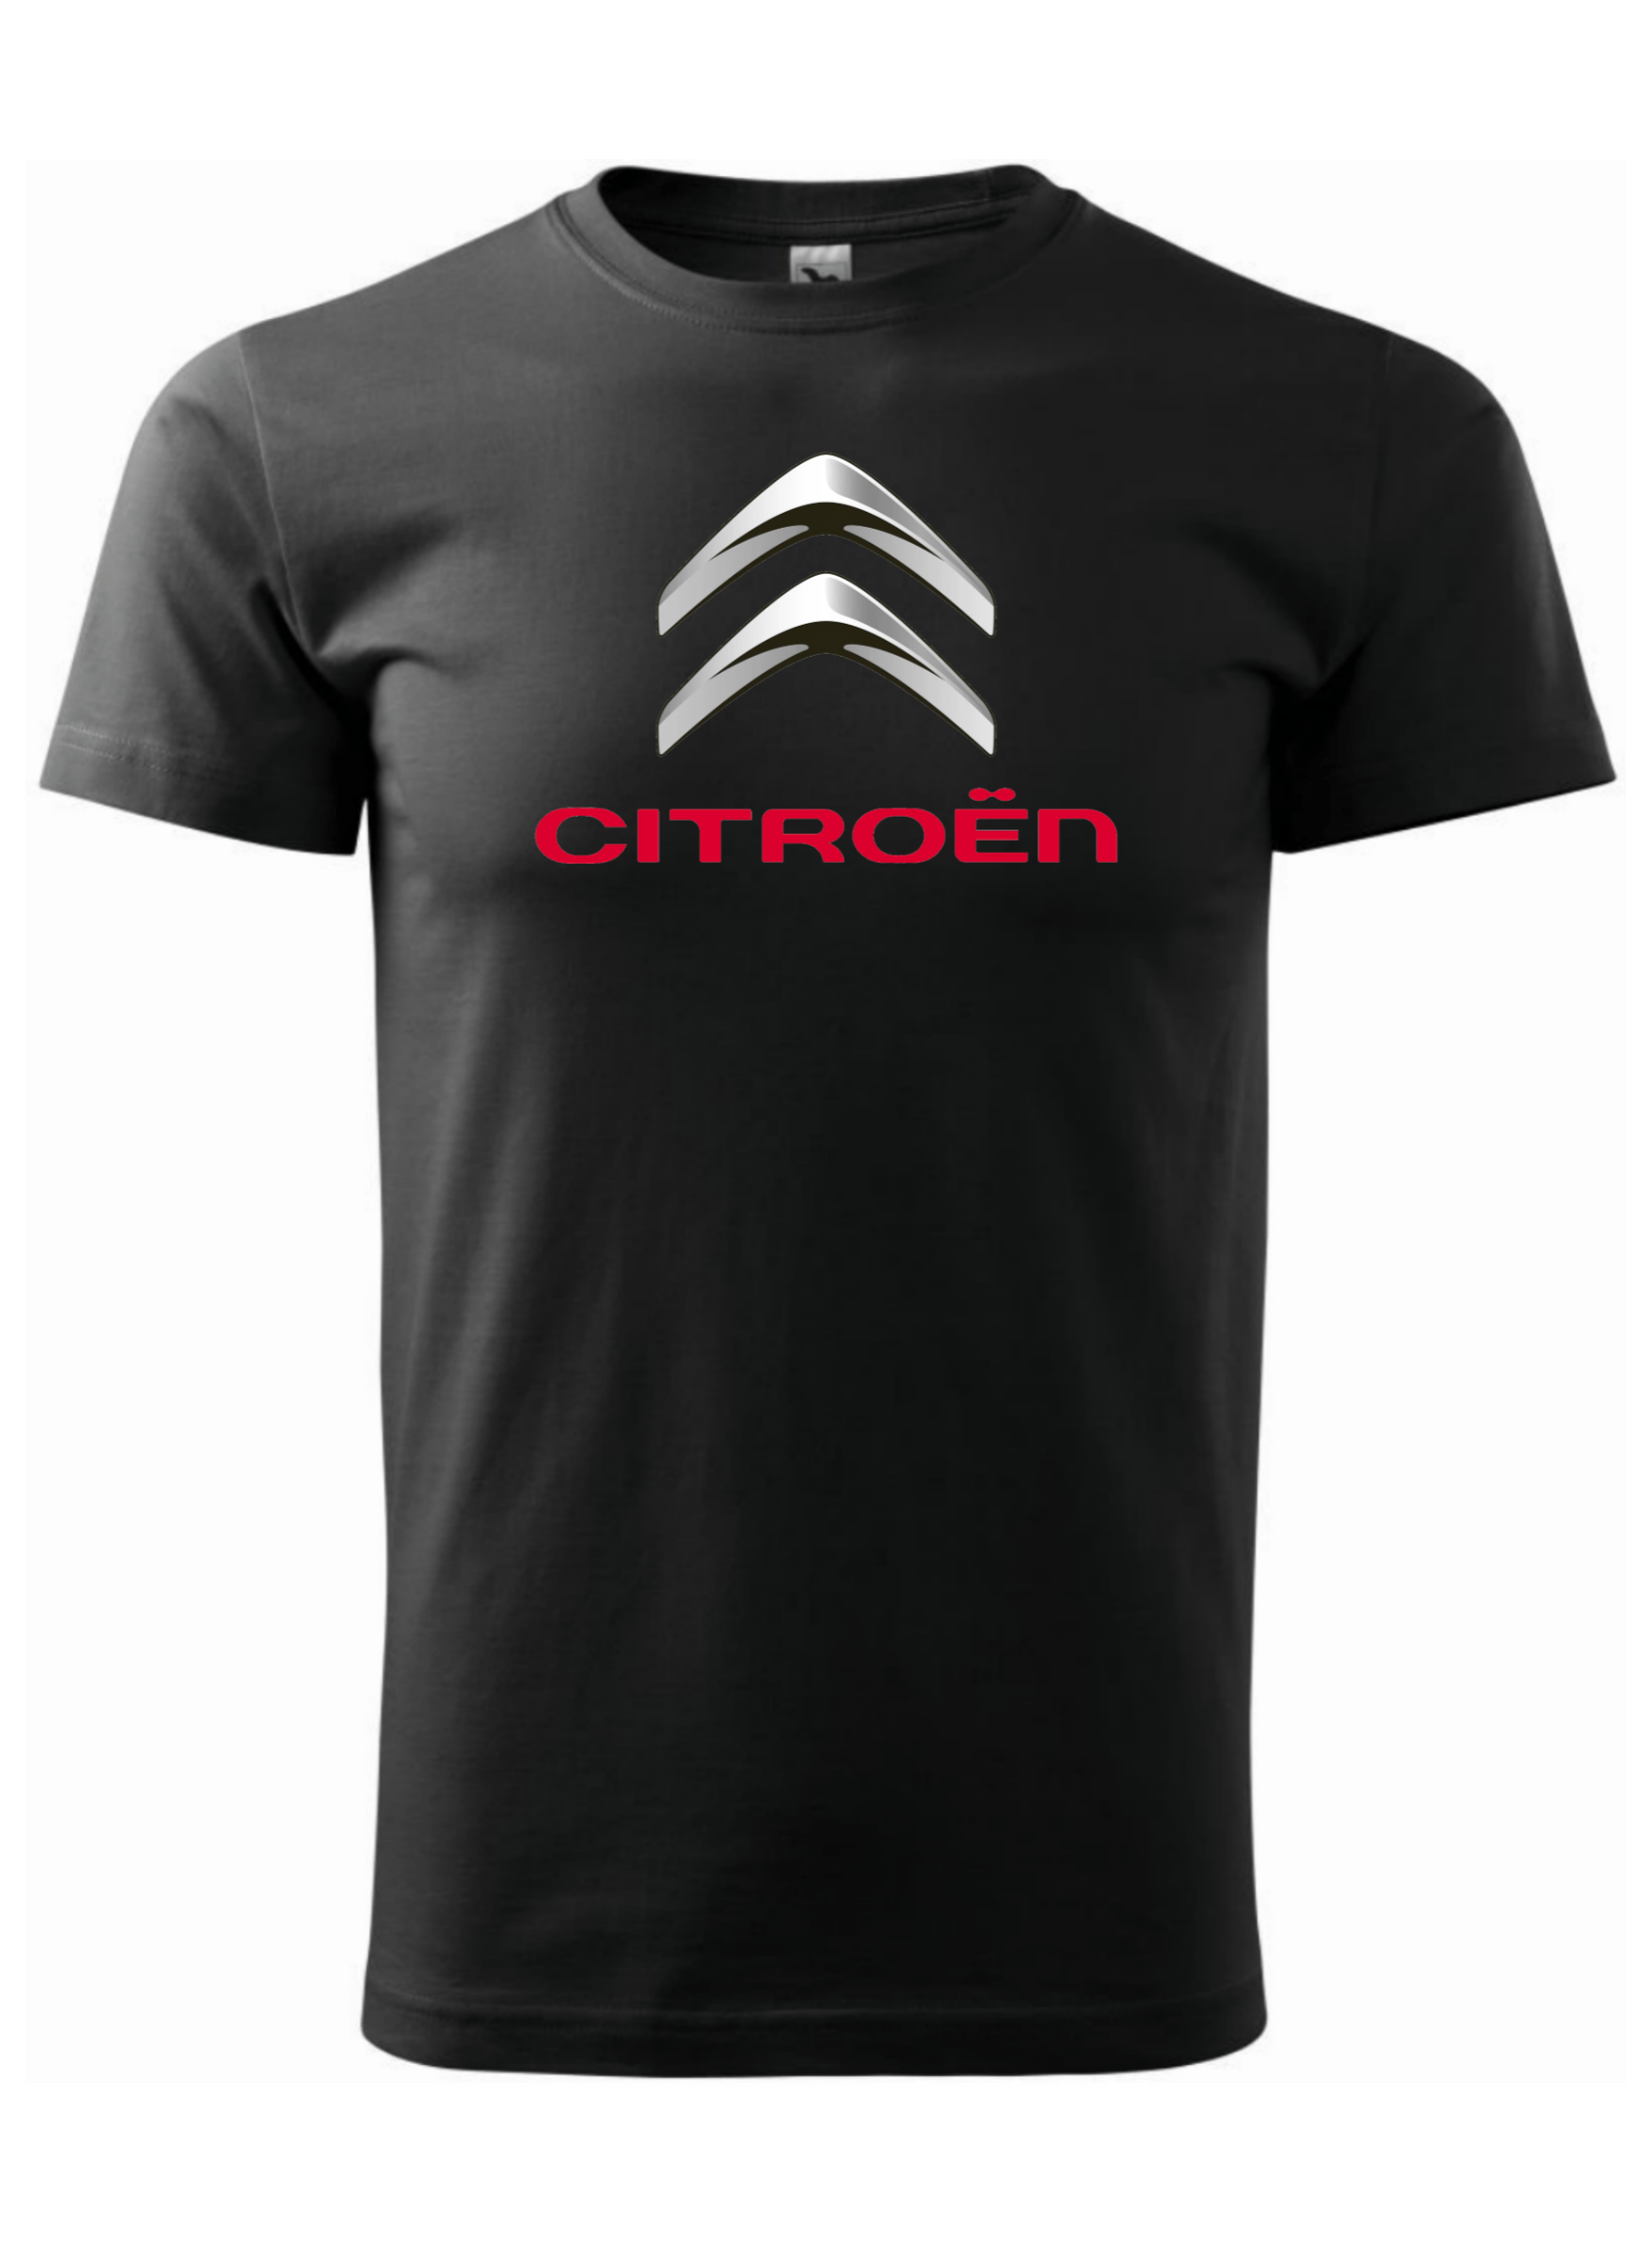 Pánské tričko s potiskem značky Citroen